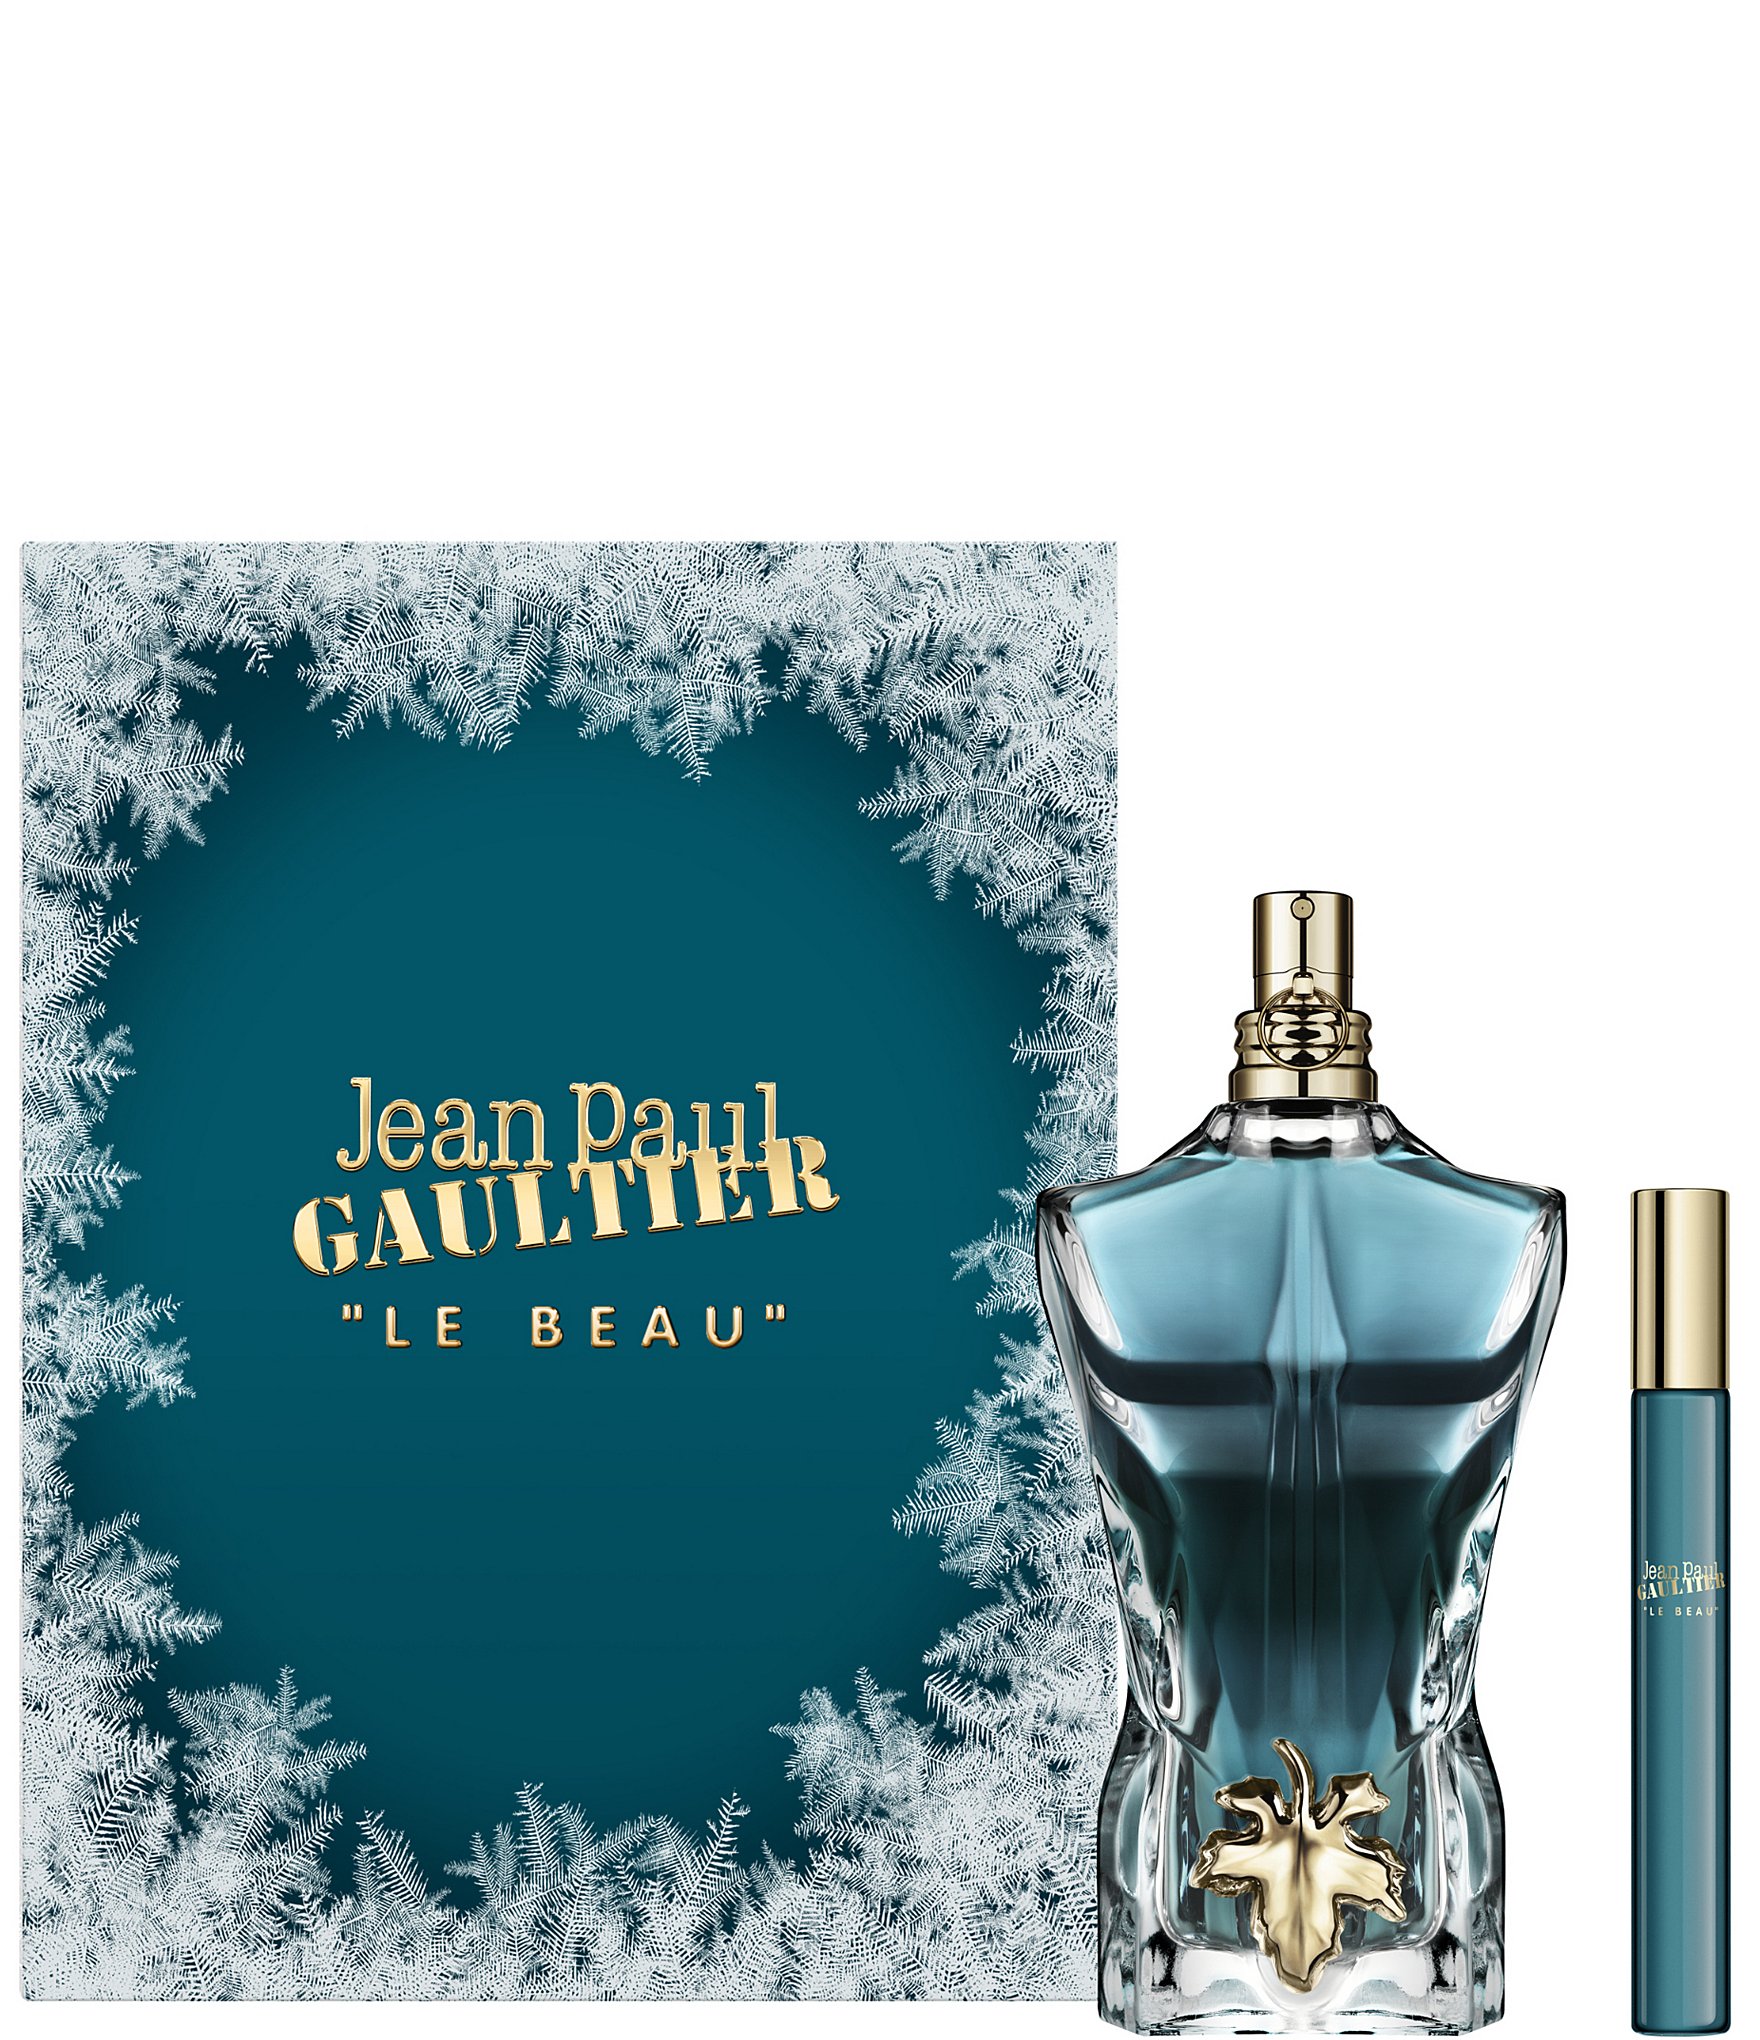 Jean paul gaultier Jean paul gaultier Gift Set 4.2 oz Eau De